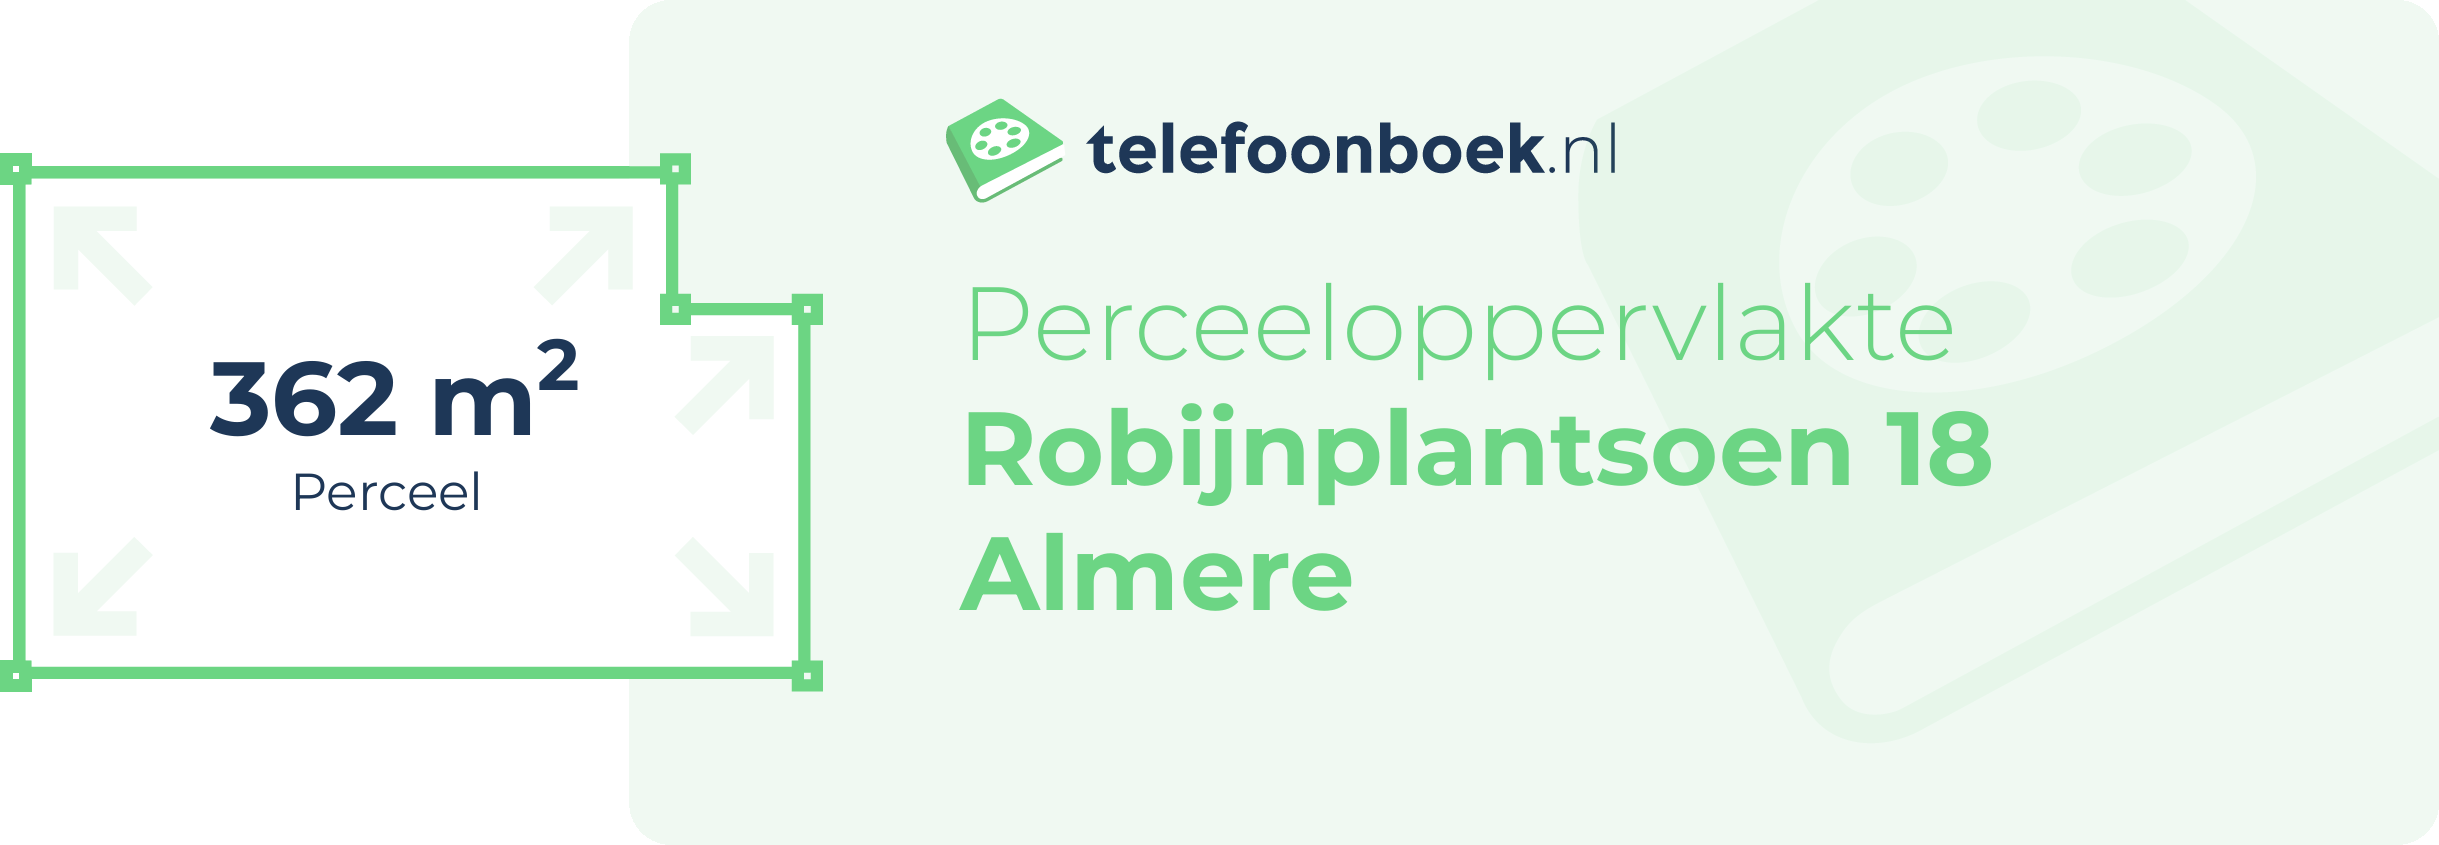 Perceeloppervlakte Robijnplantsoen 18 Almere